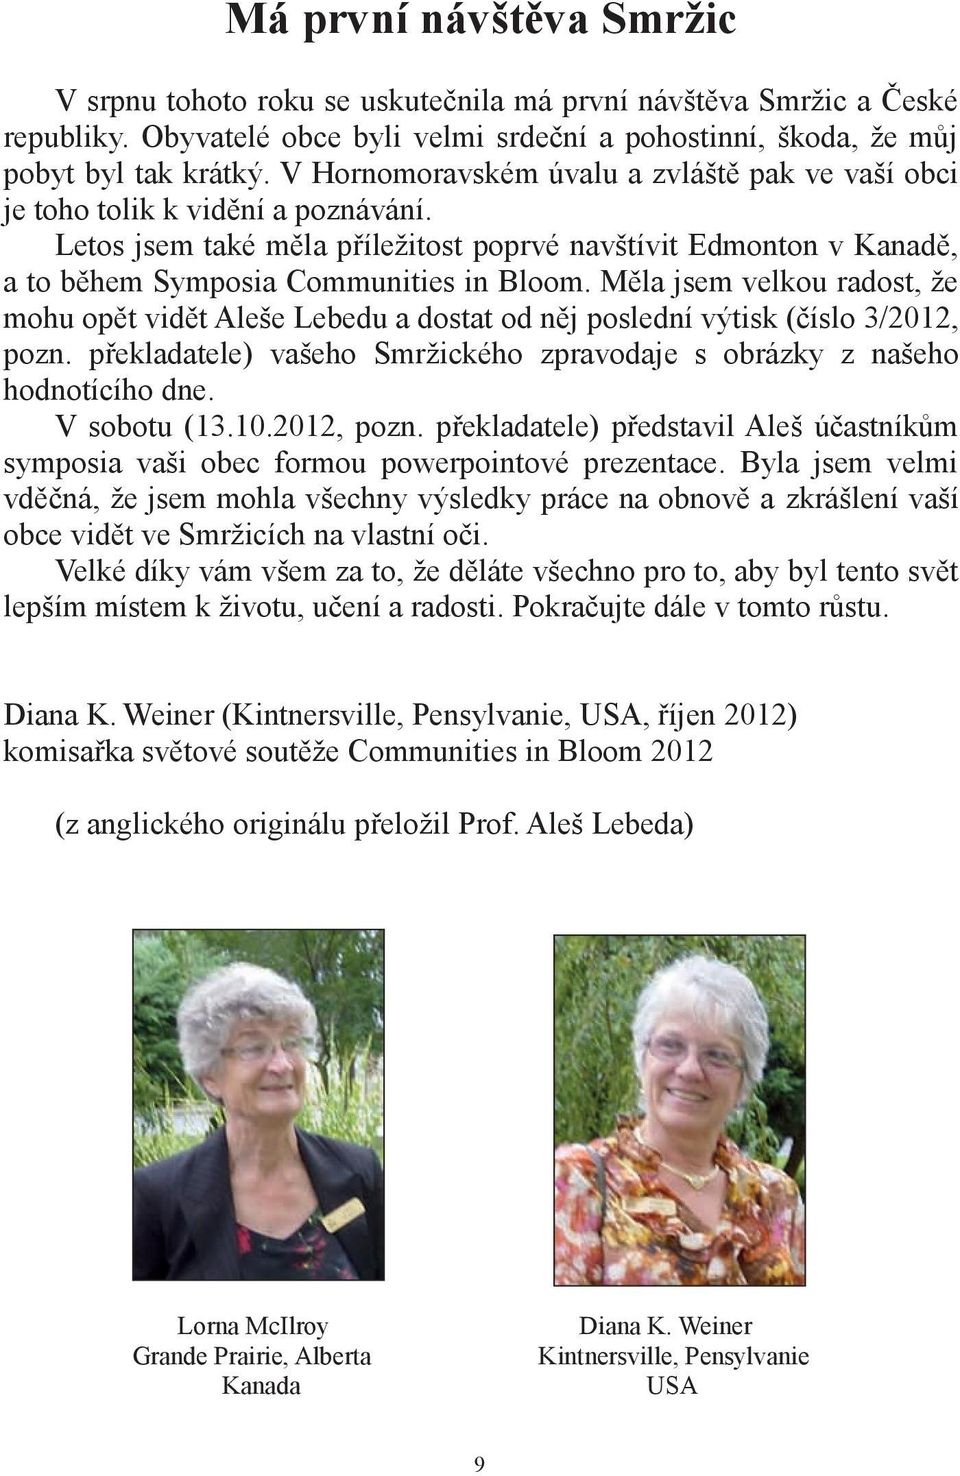 Měla jsem velkou radost, že mohu opět vidět Aleše Lebedu a dostat od něj poslední výtisk (číslo 3/2012, pozn. překladatele) vašeho Smržického zpravodaje s obrázky z našeho hodnotícího dne.